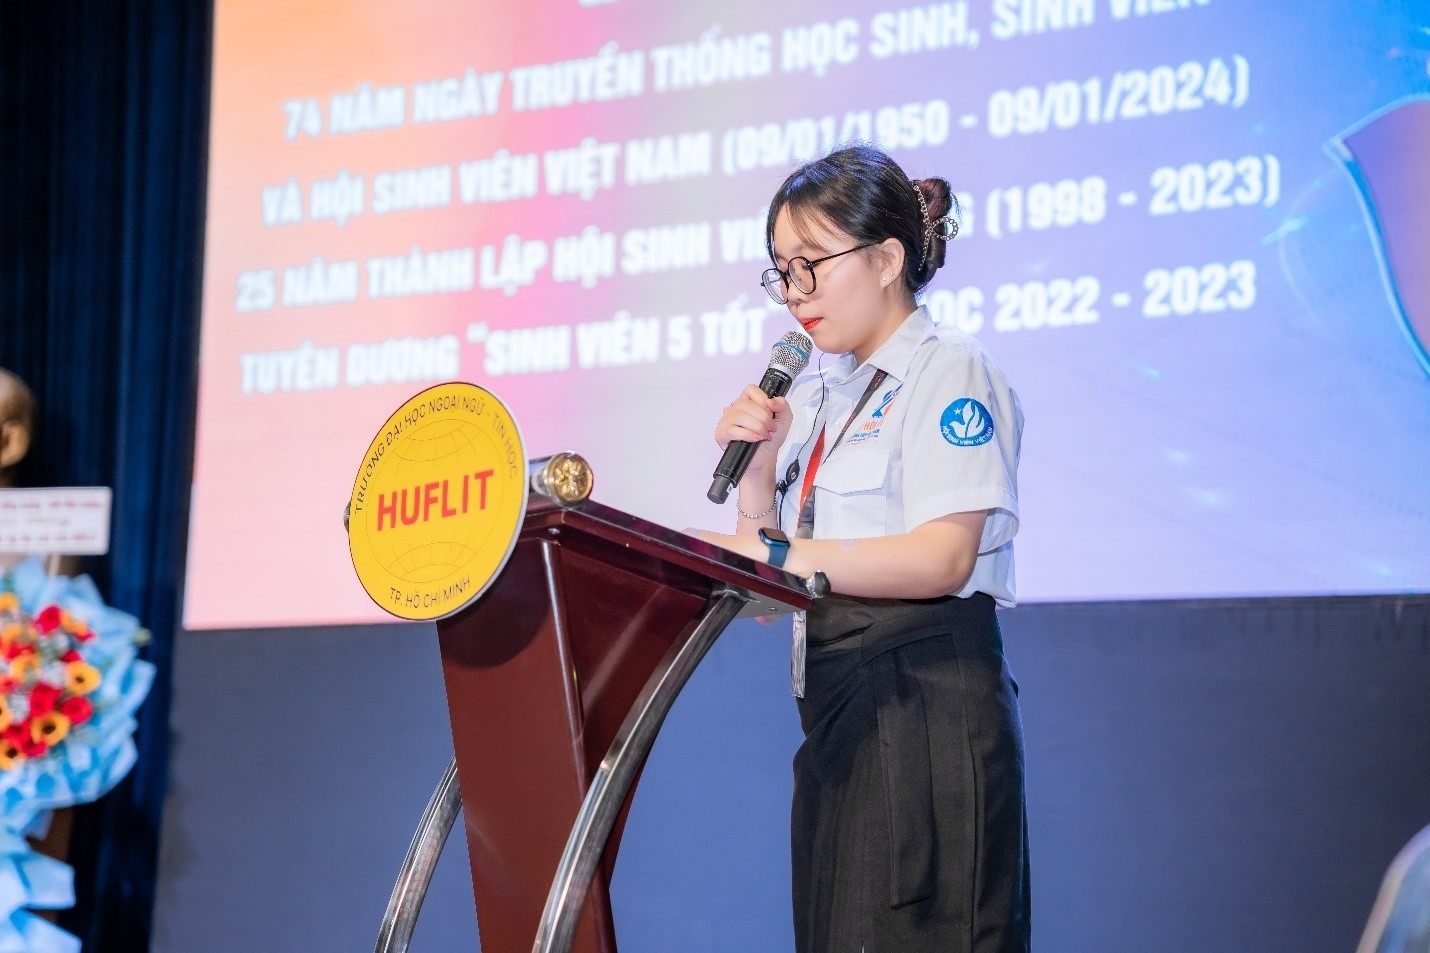 25 năm Hội Sinh viên HUFLIT: Hình thành - Tiếp nối - Phát triển